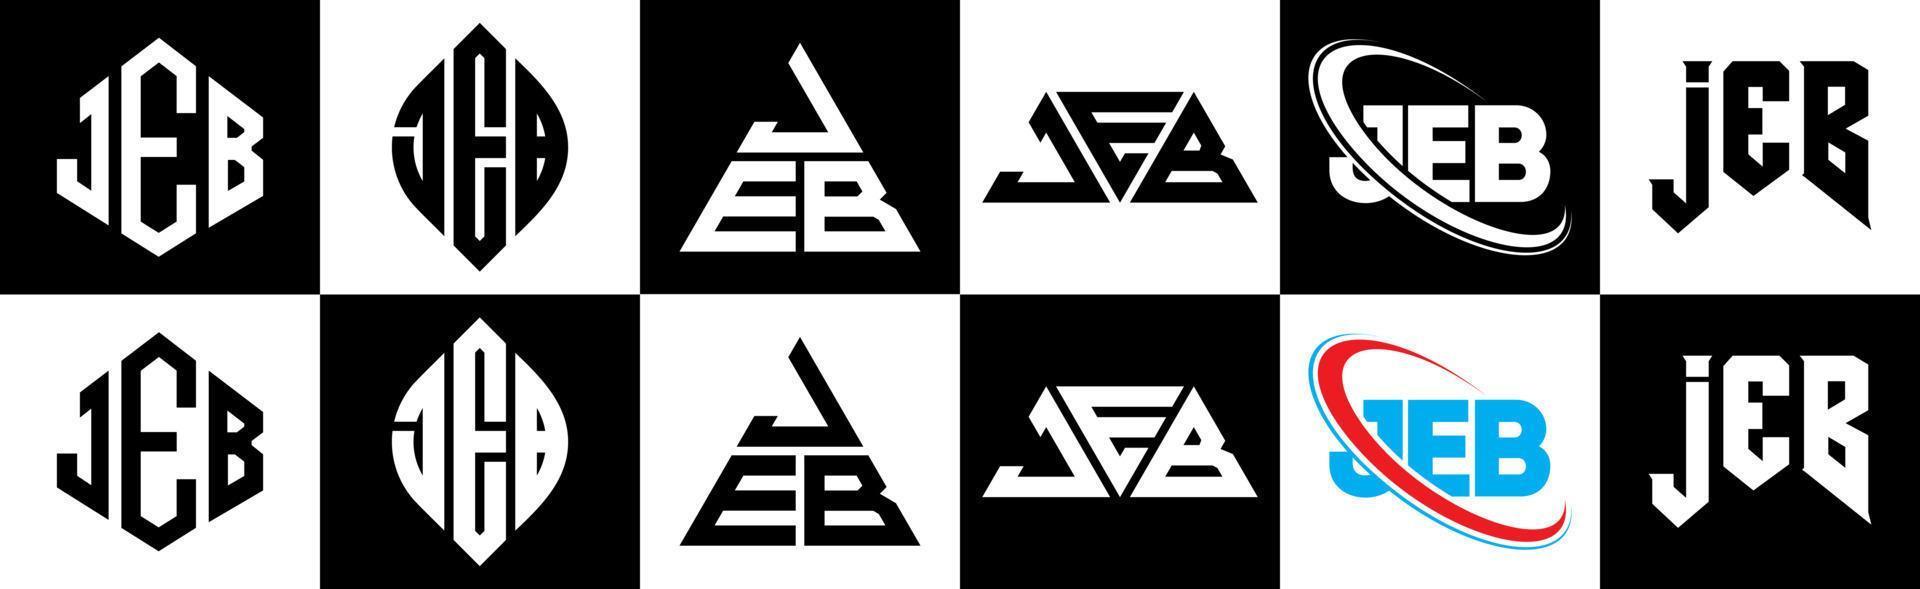 création de logo de lettre jeb en six styles. polygone jeb, cercle, triangle, hexagone, style plat et simple avec logo de lettre de variation de couleur noir et blanc dans un plan de travail. jeb logo minimaliste et classique vecteur